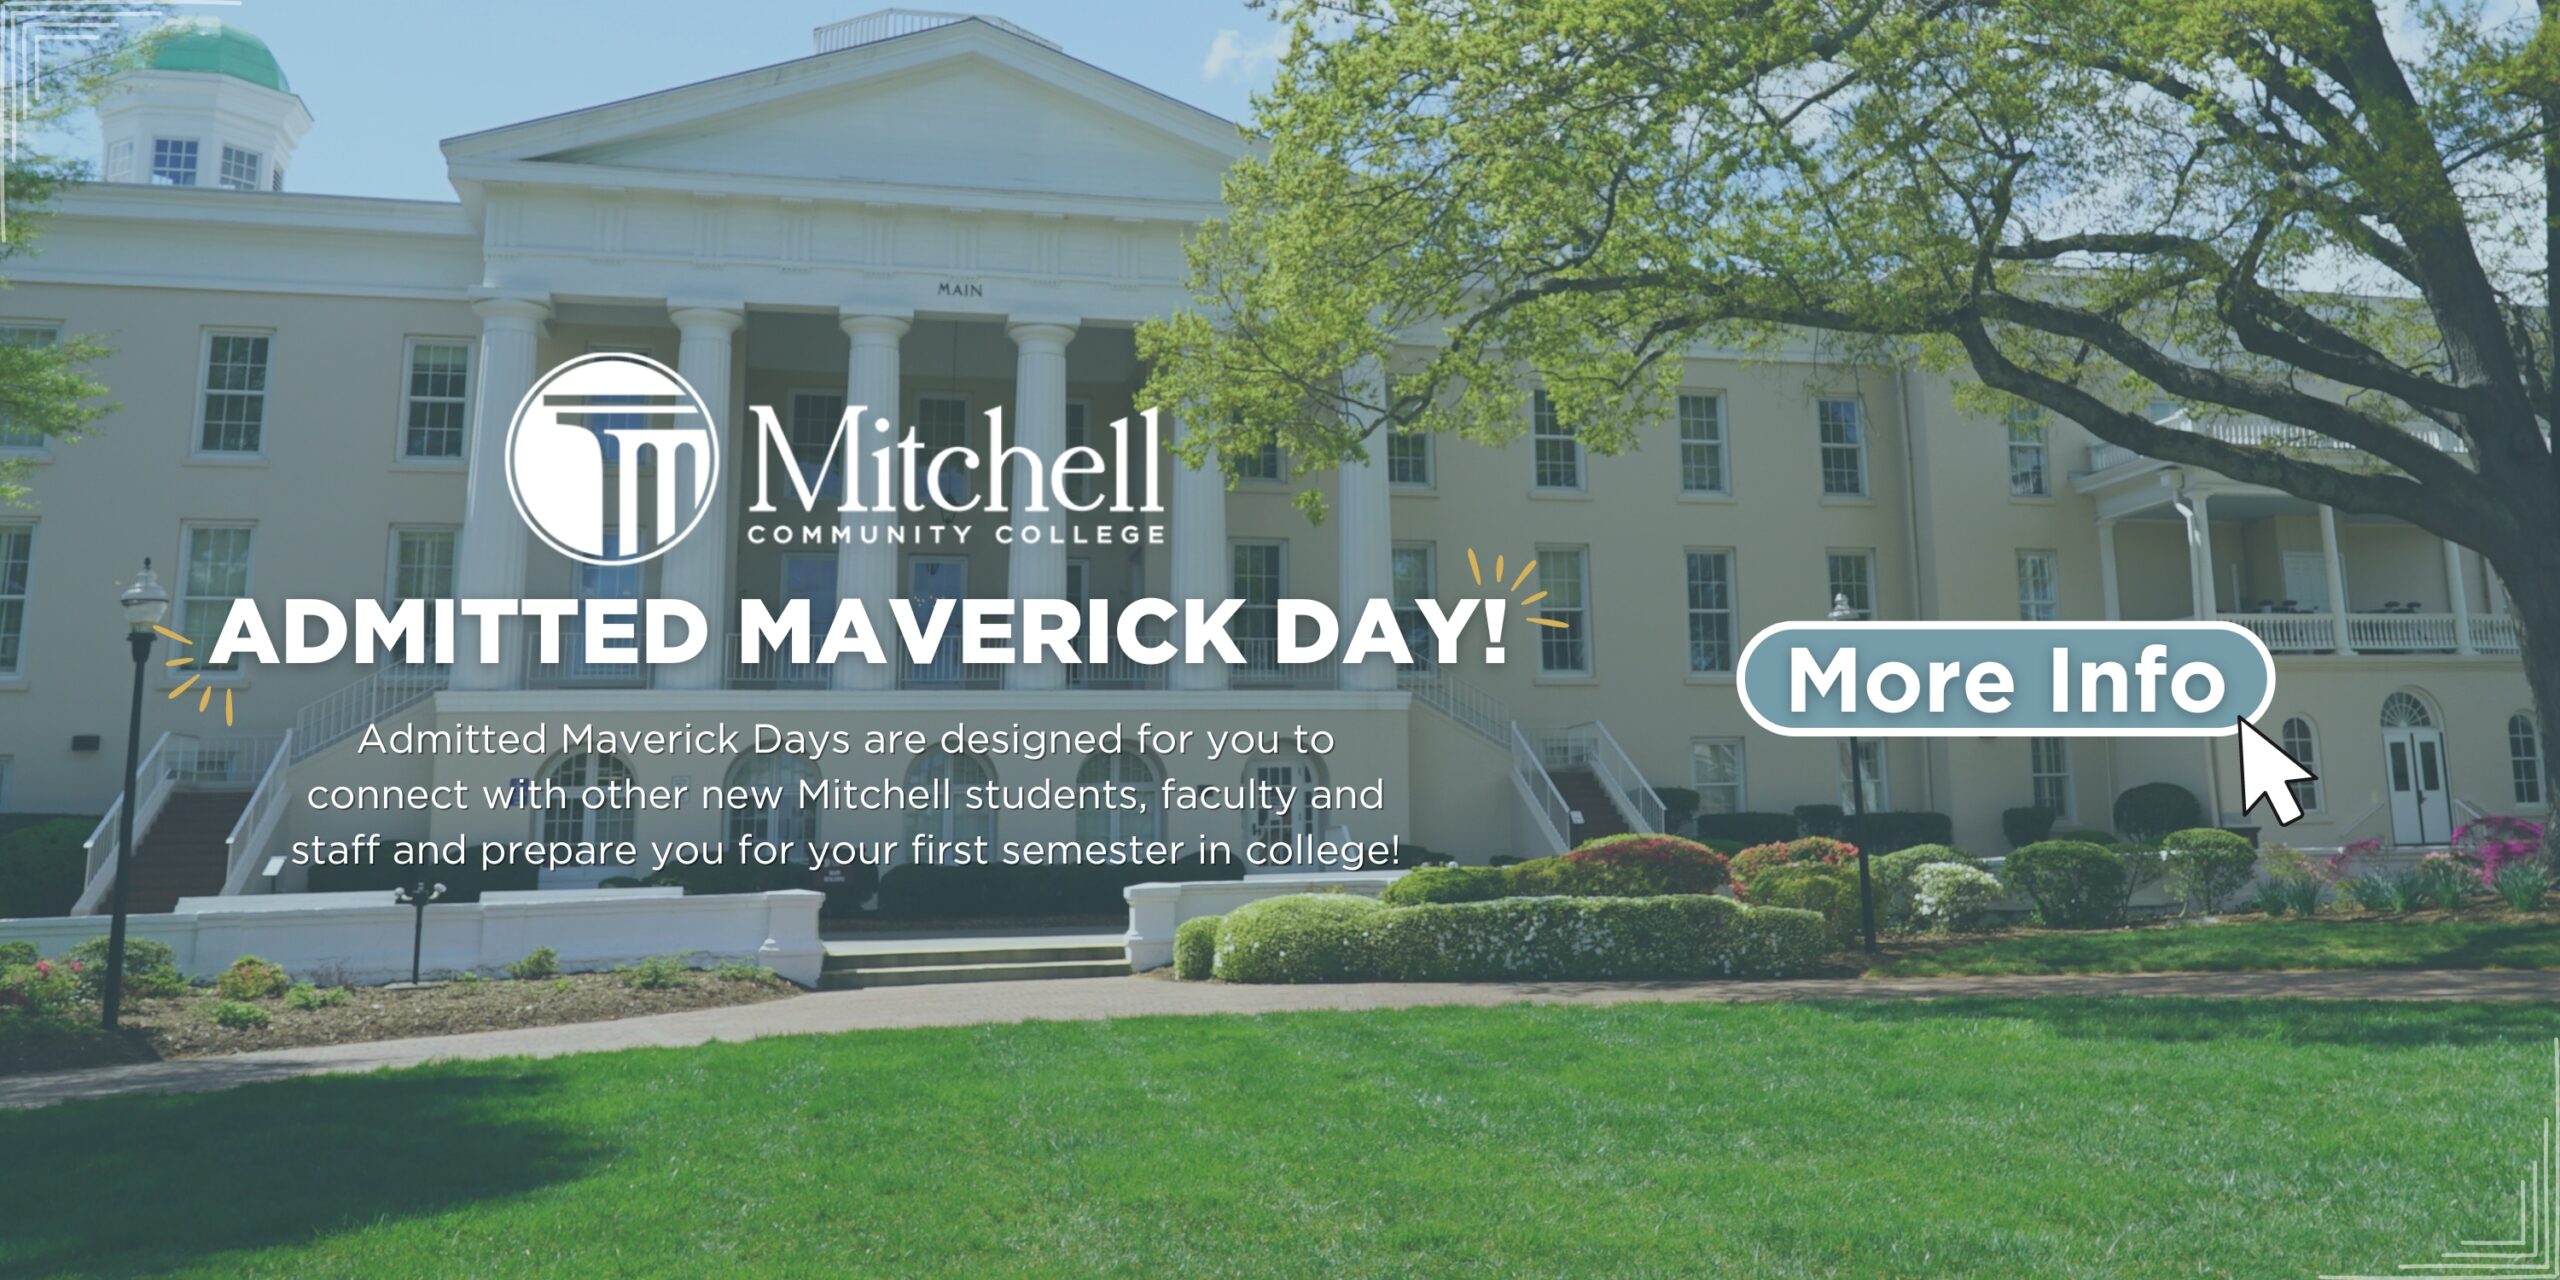 Cliquez sur cette bannière pour en savoir plus sur la Journée des Mavericks Admis !